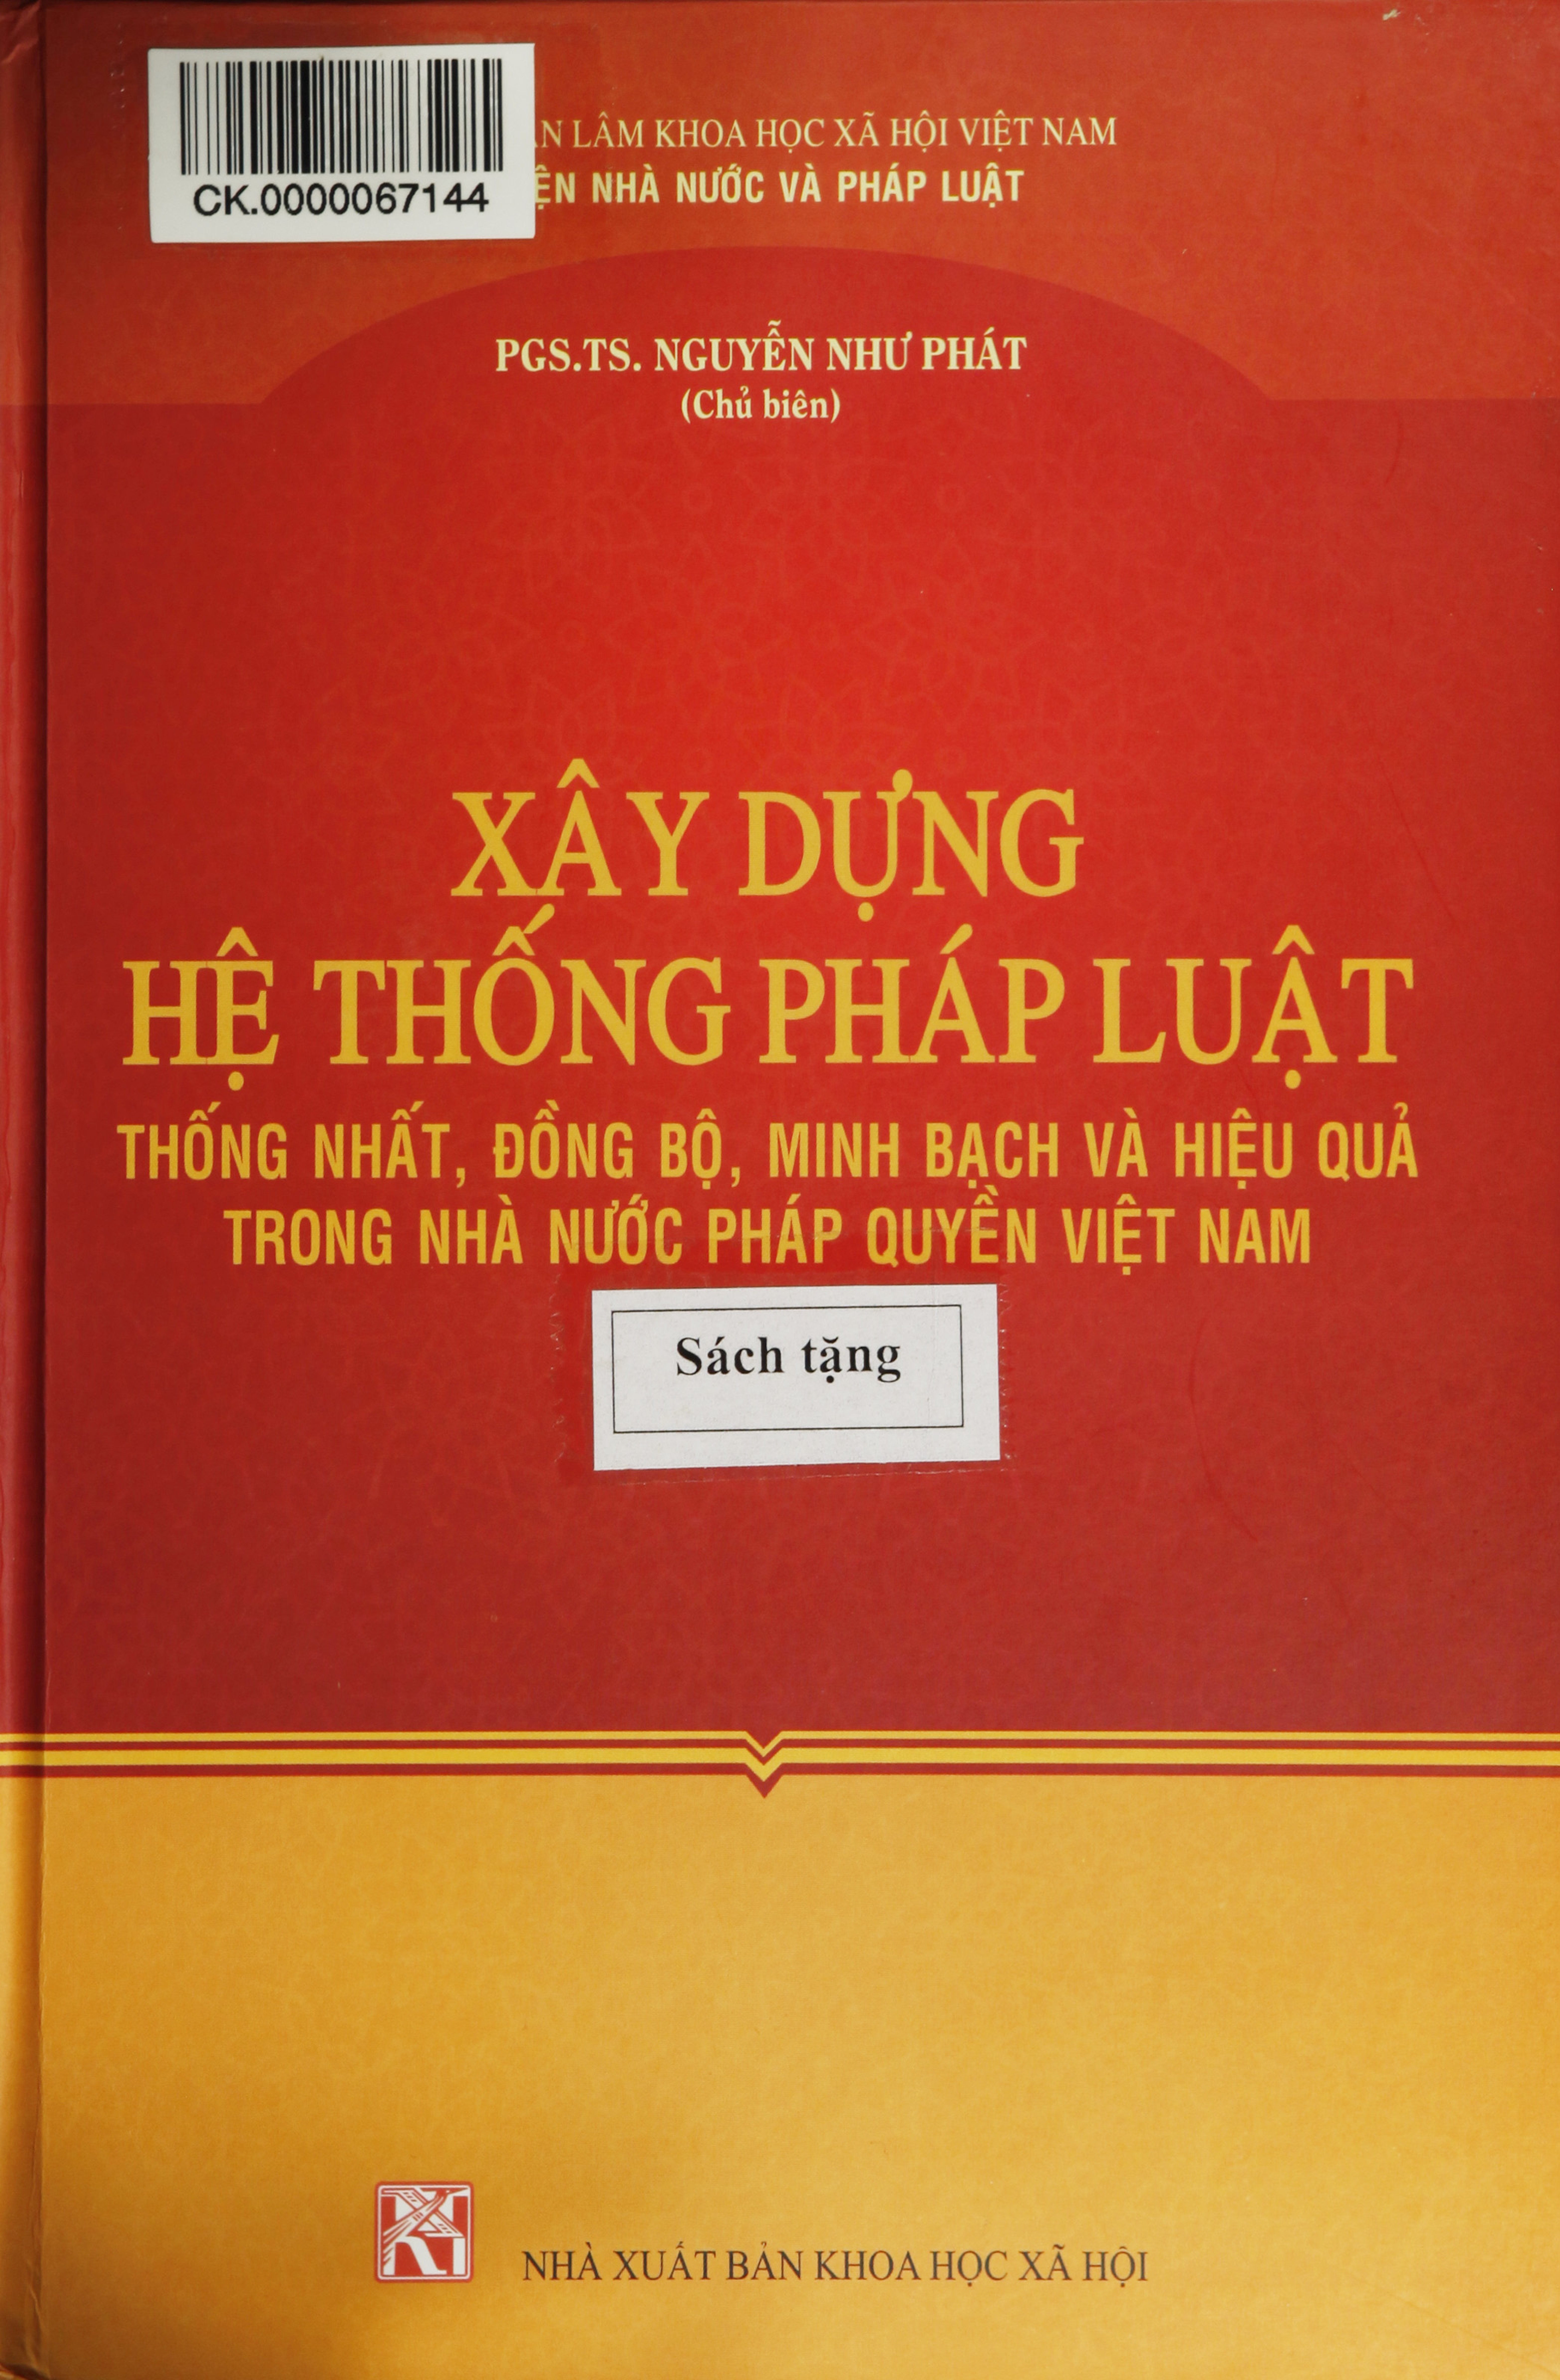 Xây dựng hệ thống pháp luật thống nhất, đồng bộ, minh bạch và hiệu quả trong nhà nước pháp quyền Việt Nam